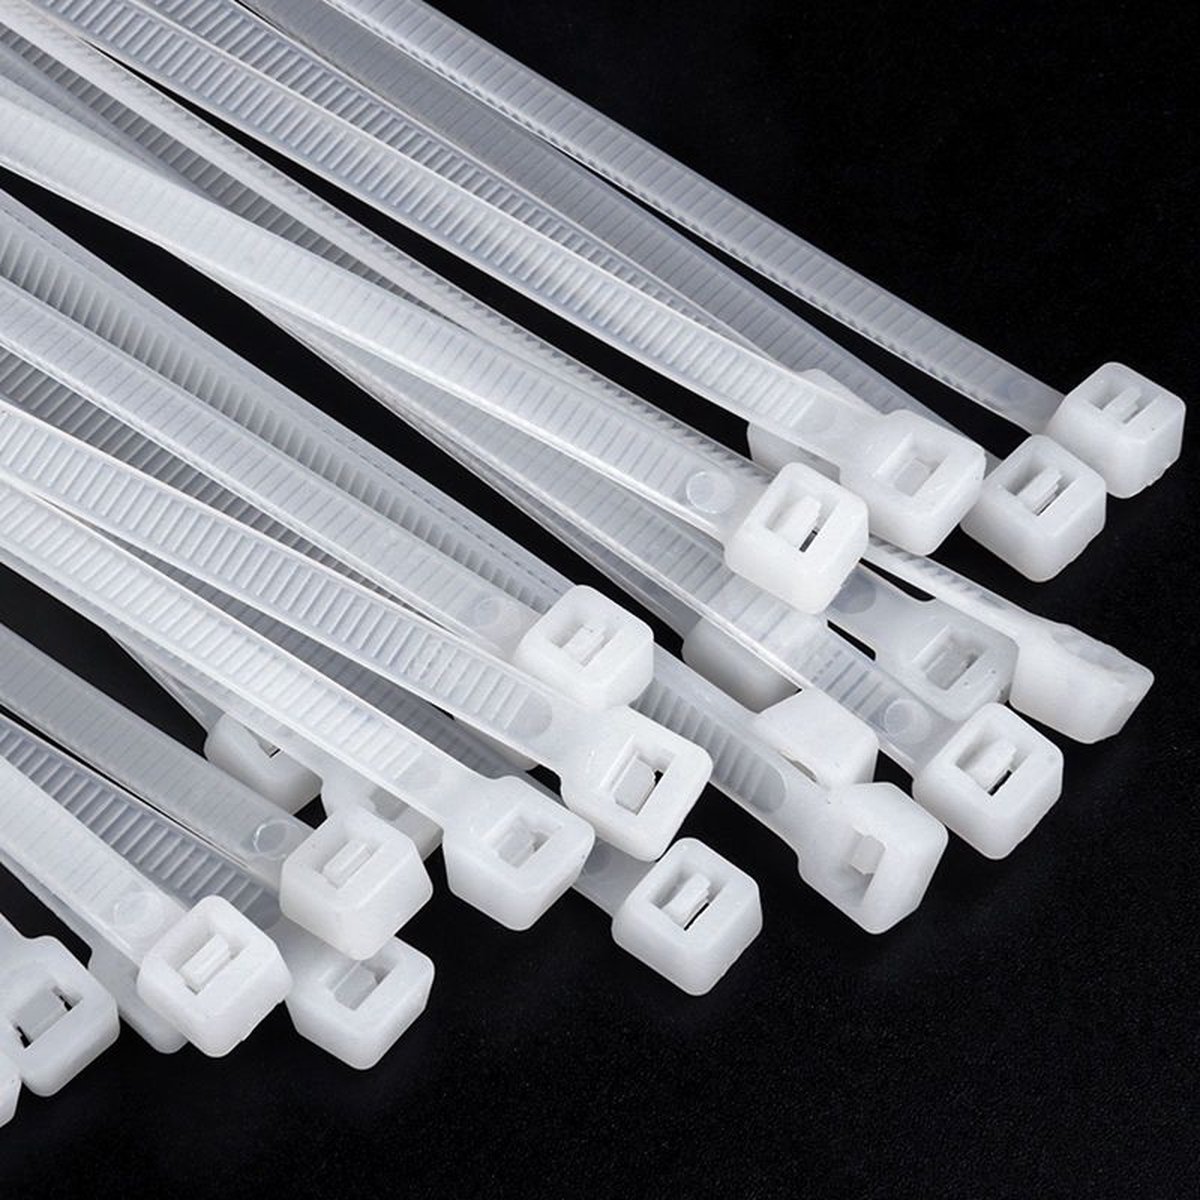 Kabelbinders - Tie wraps - Tie Ribs - cabel ties -2.5mm*20cm - 10 stuks - wit